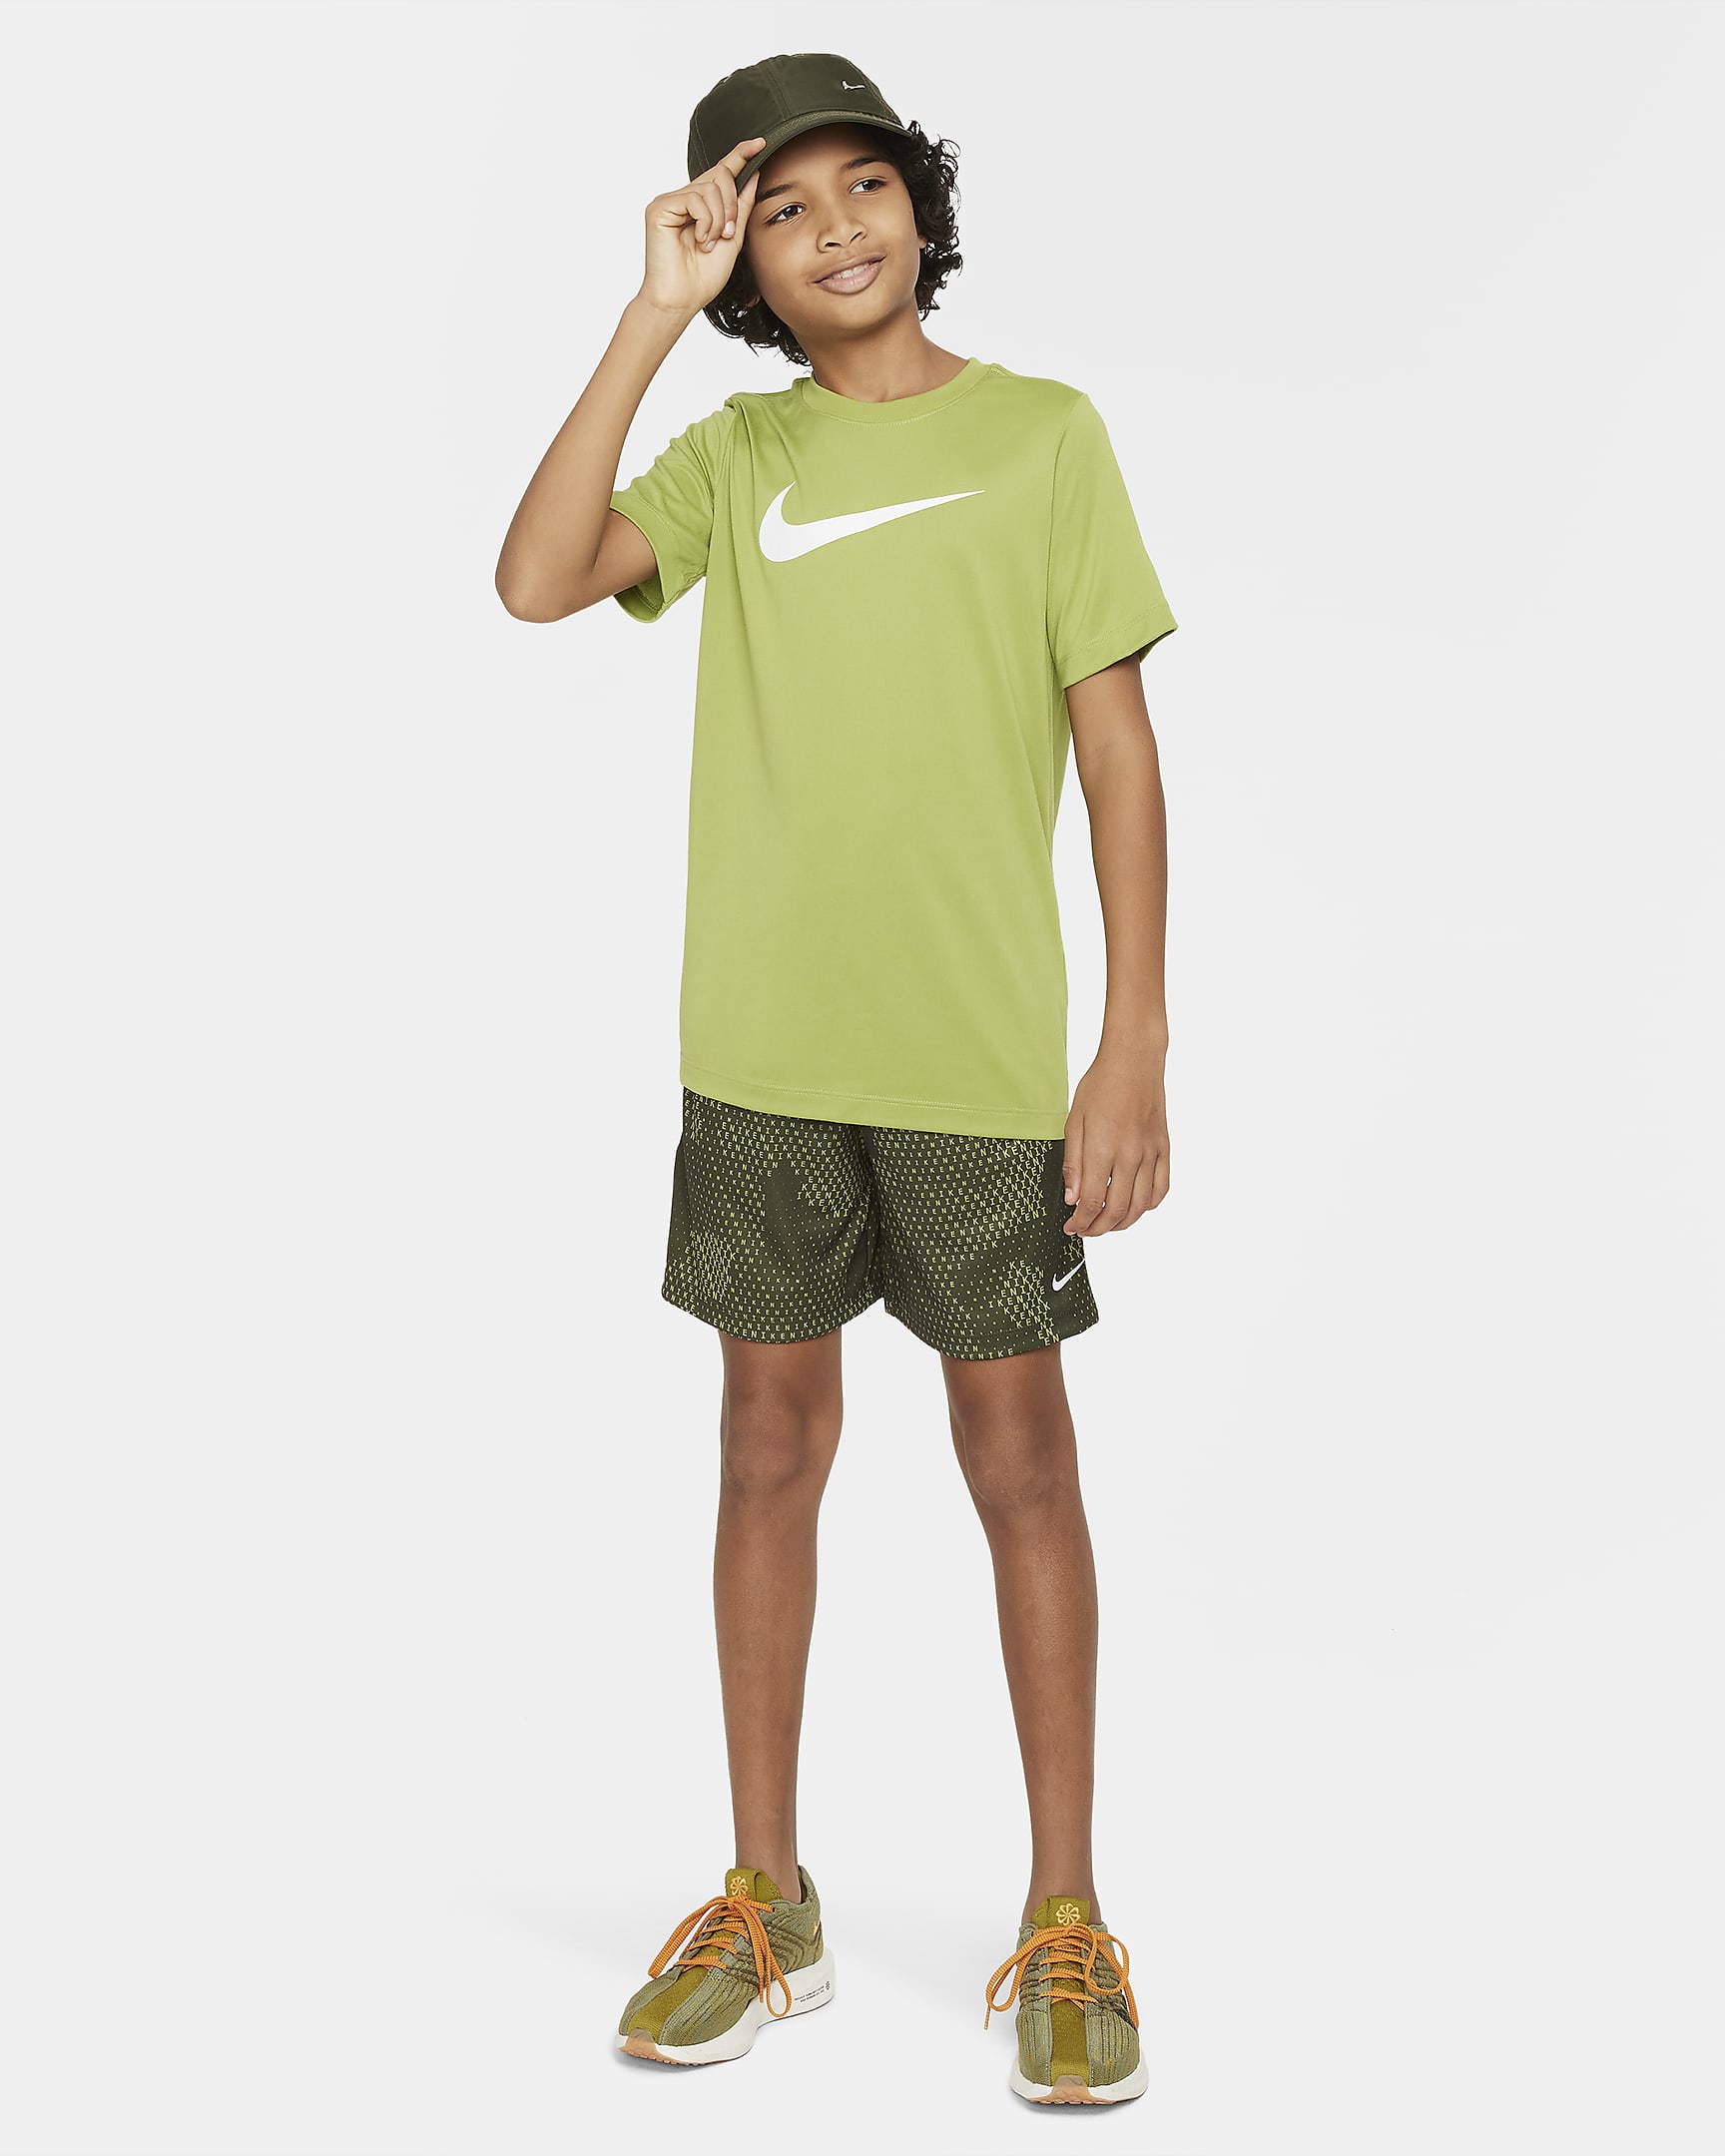 Nike Dri-FIT Legend Big Kids' (Boys') T-Shirt. Nike.com